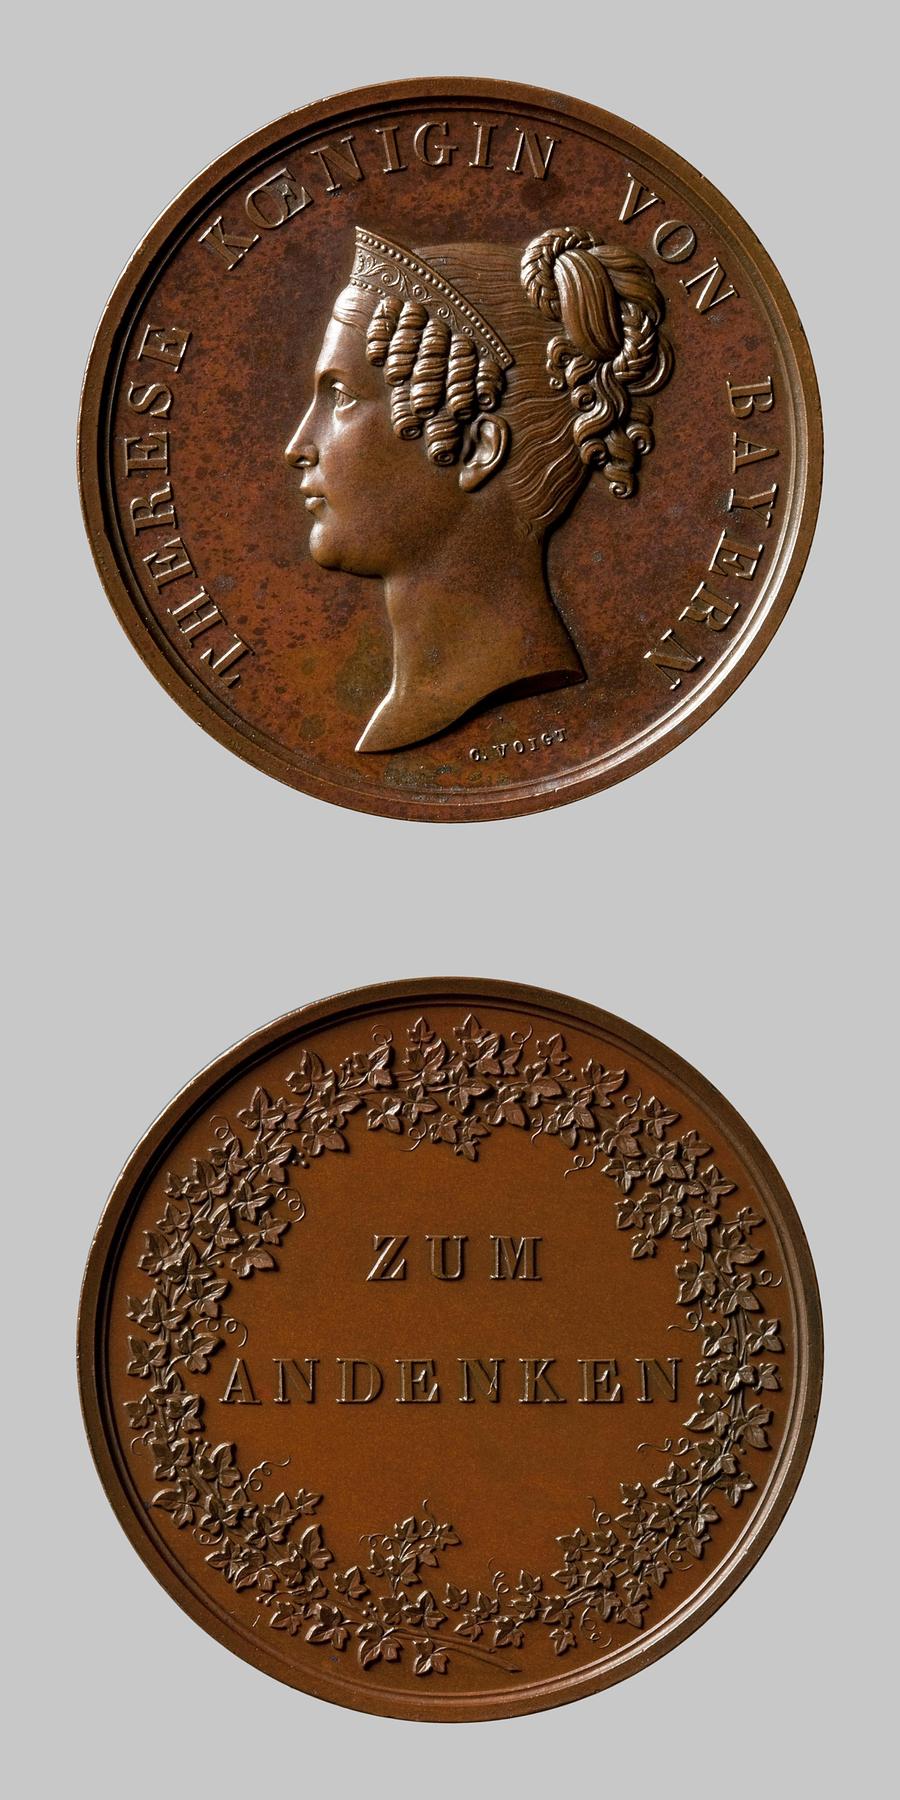 Medaljens forside: Therese af Sachsen-Hildburghausen. Medaljens bagside: Efeukrans og indskription, F127